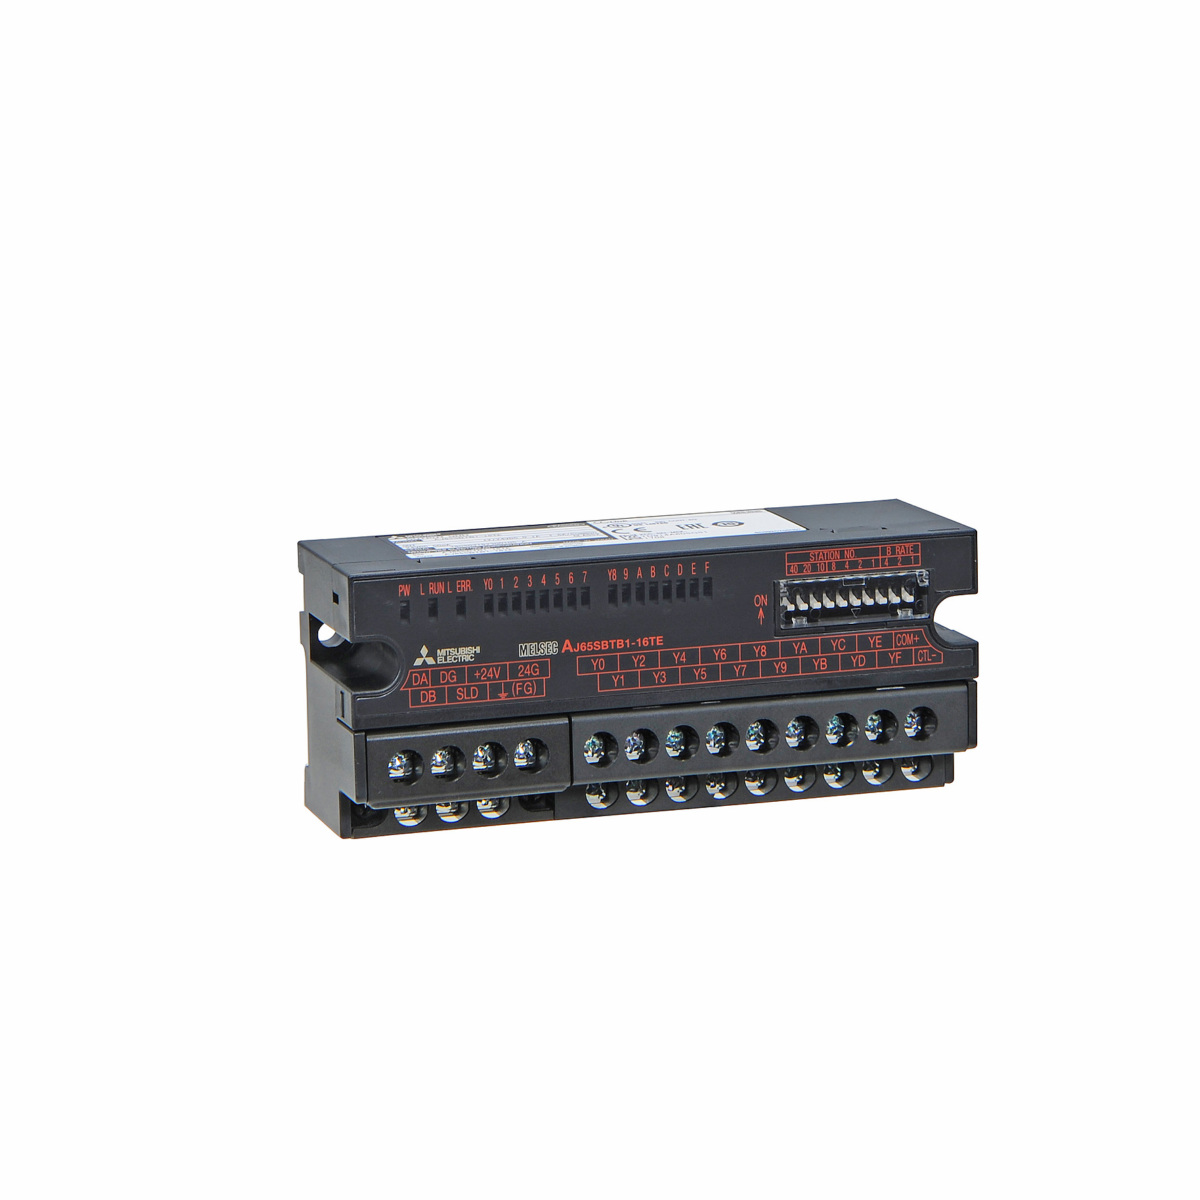 AJ65SBTB1-16TE | Digital Output Module | PLC Modular | PLC